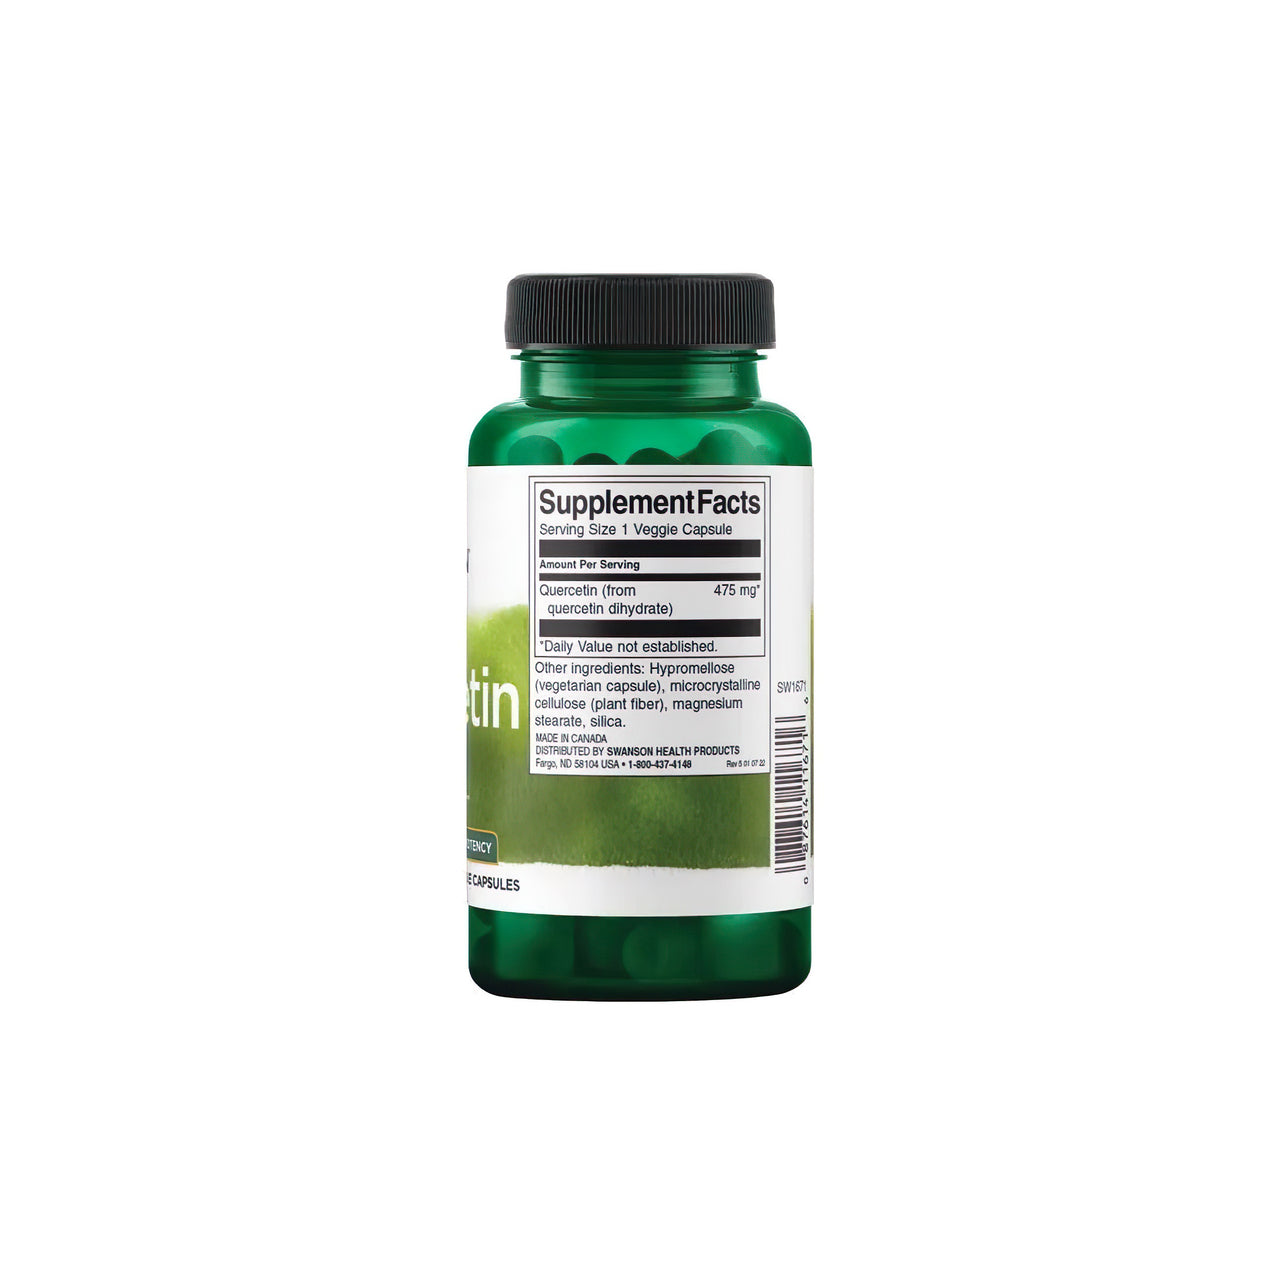 Une bouteille de Quercétine 475 mg 60 vcaps, riche en antioxydants, par Swanson sur fond blanc, promouvant les bienfaits pour le système immunitaire et les vaisseaux sanguins.